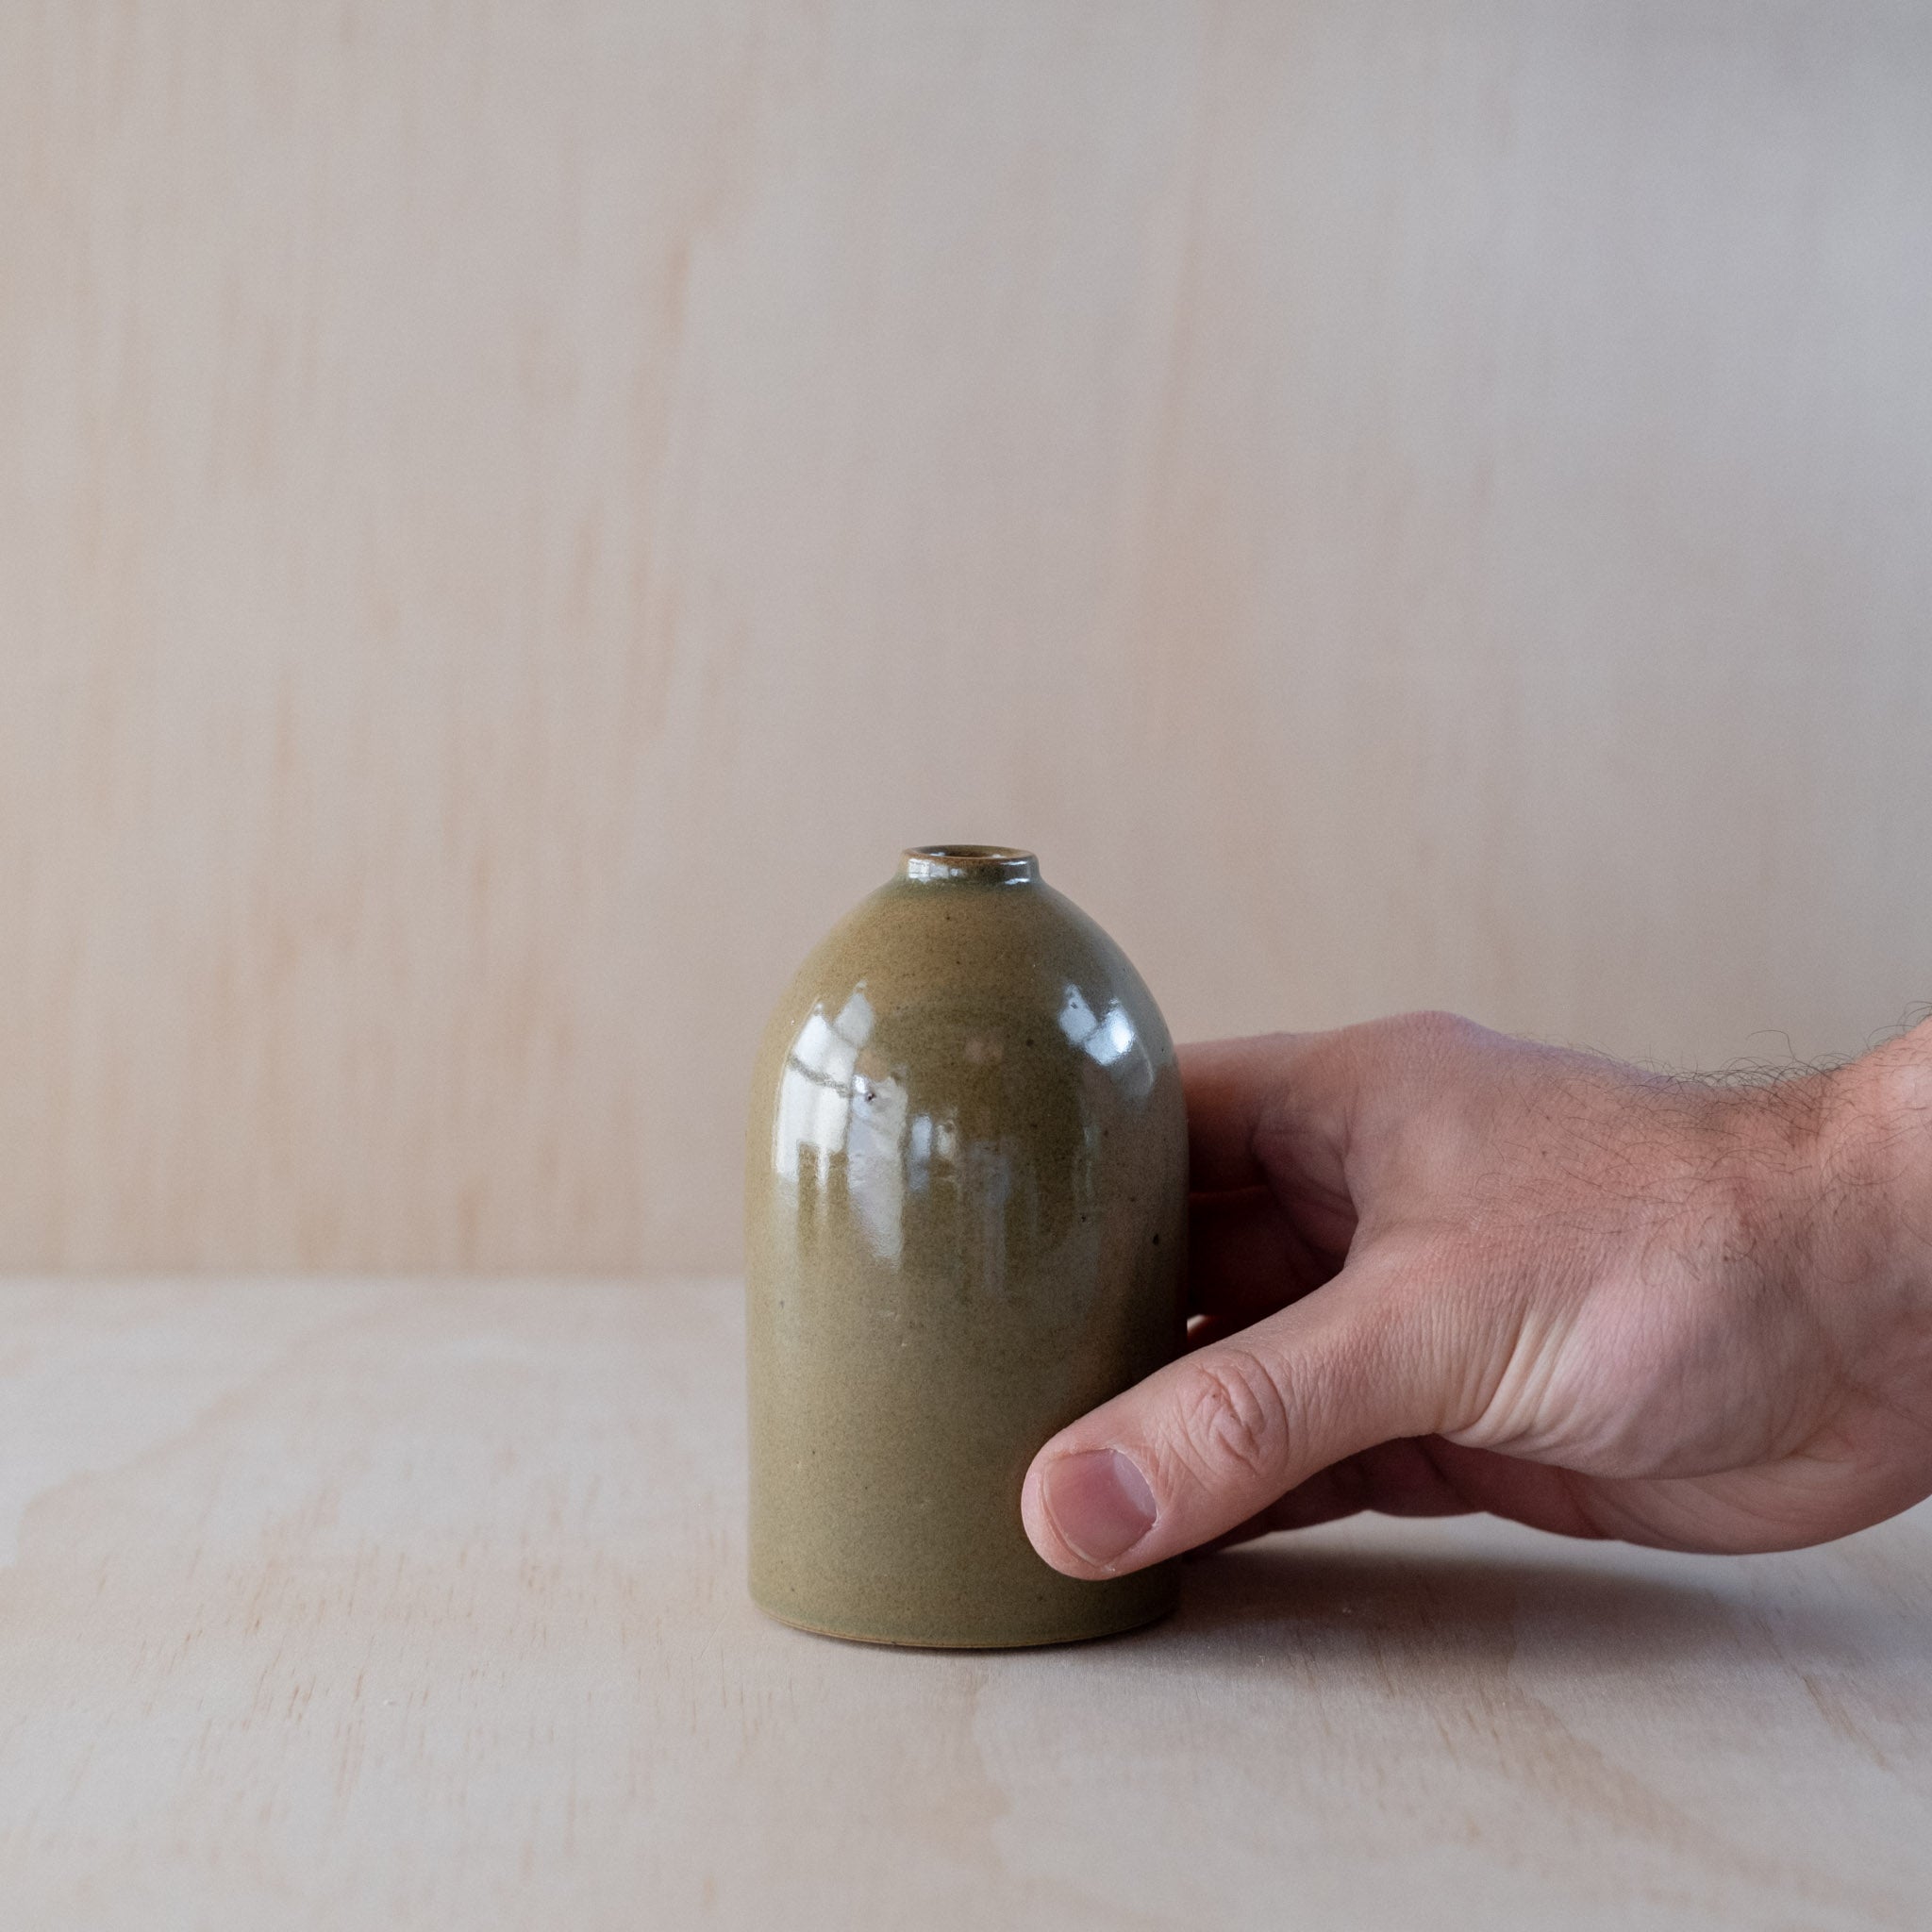 Medium Bottle Vase, Green